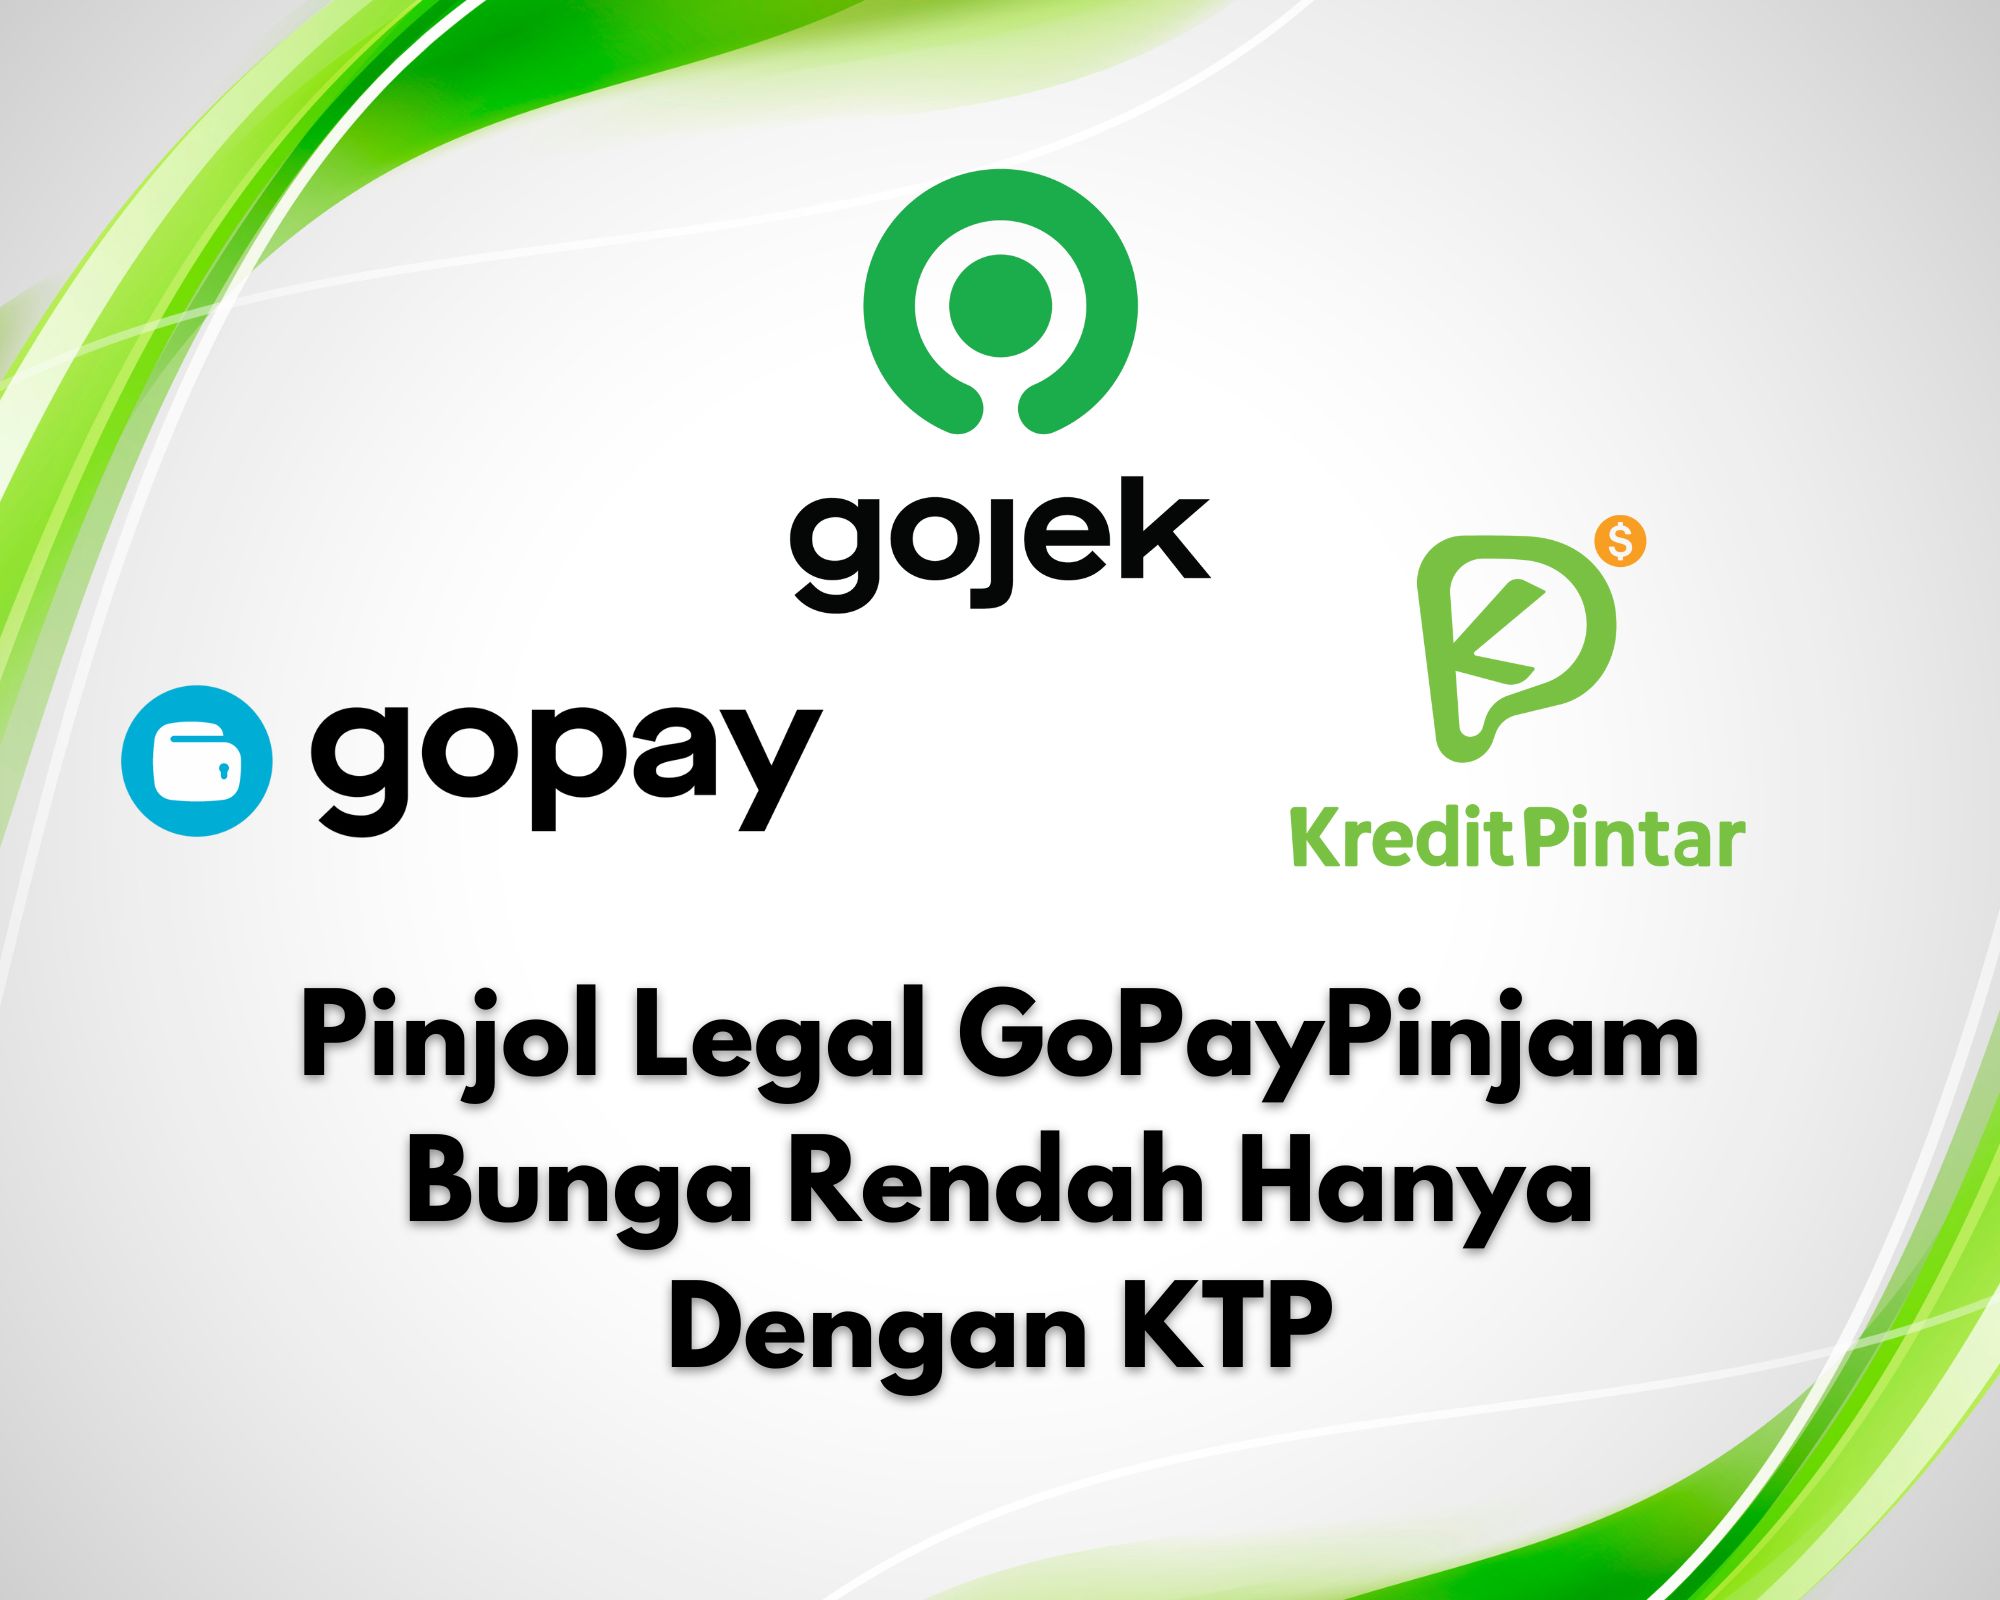 GoPayPinjam Pinjol Legal Bunga Rendah Hanya KTP Saja!